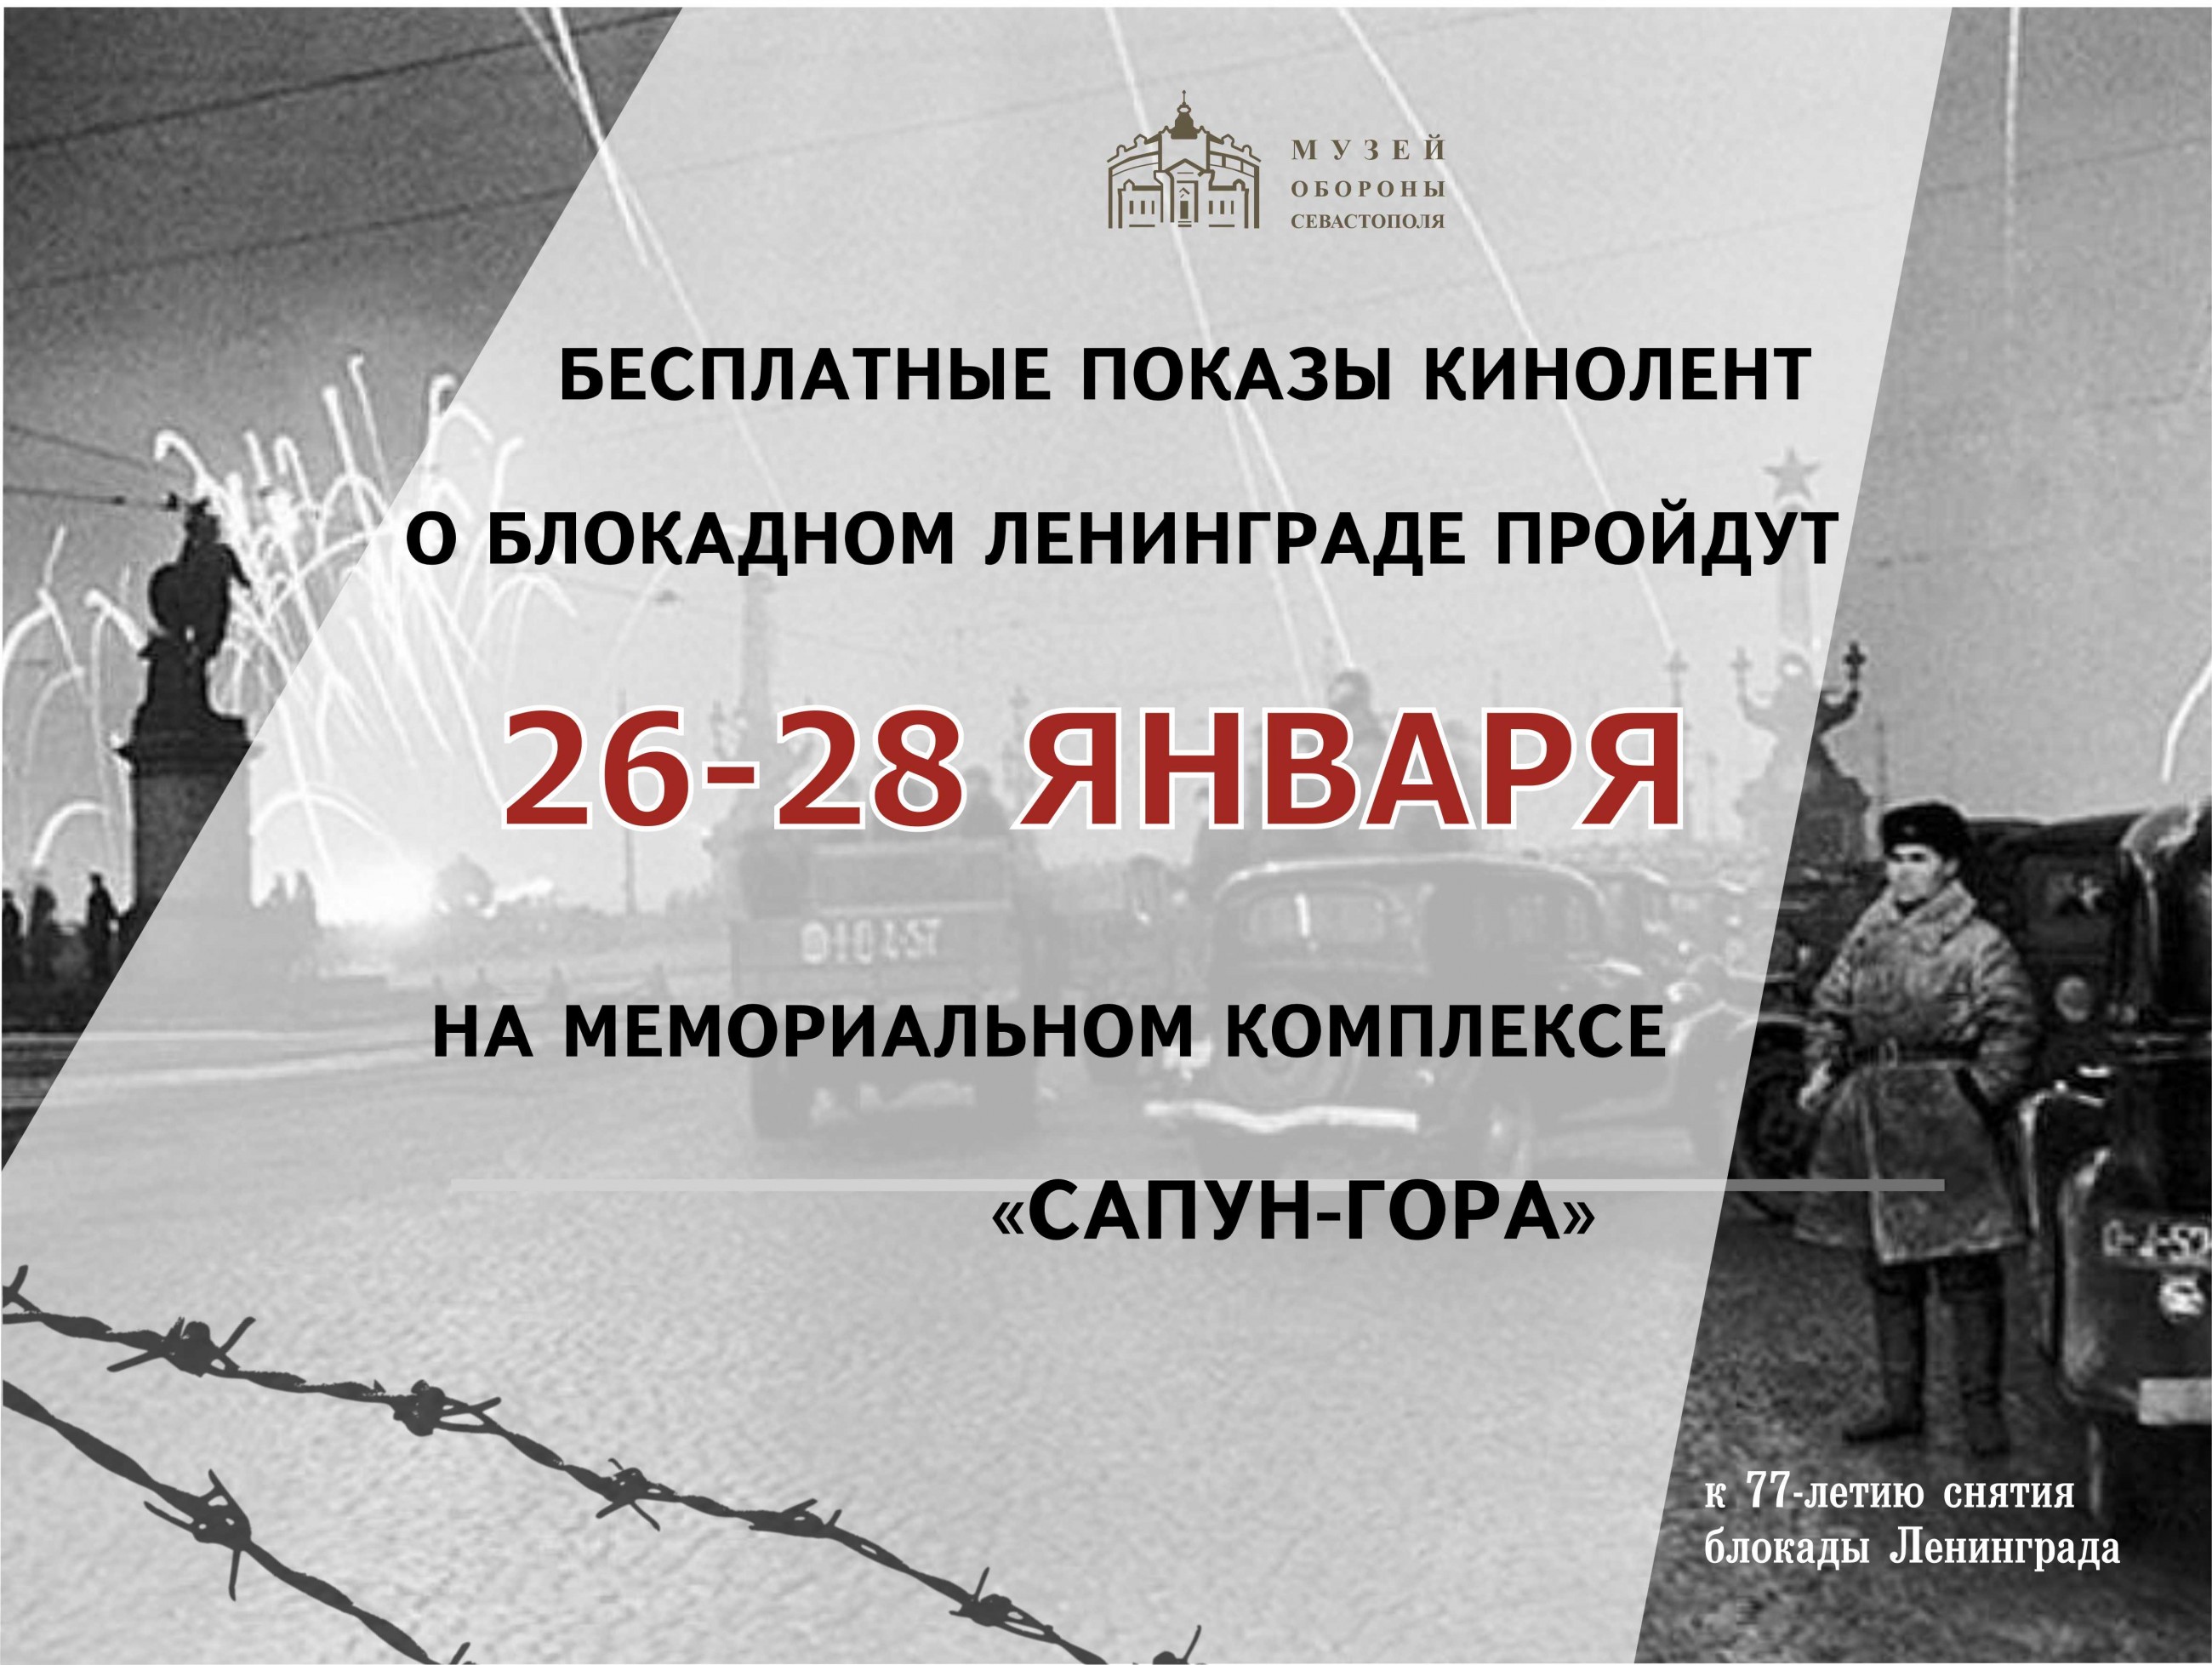 Бесплатные сеансы кинолент о блокадном Ленинграде в Музее обороны Севастополя